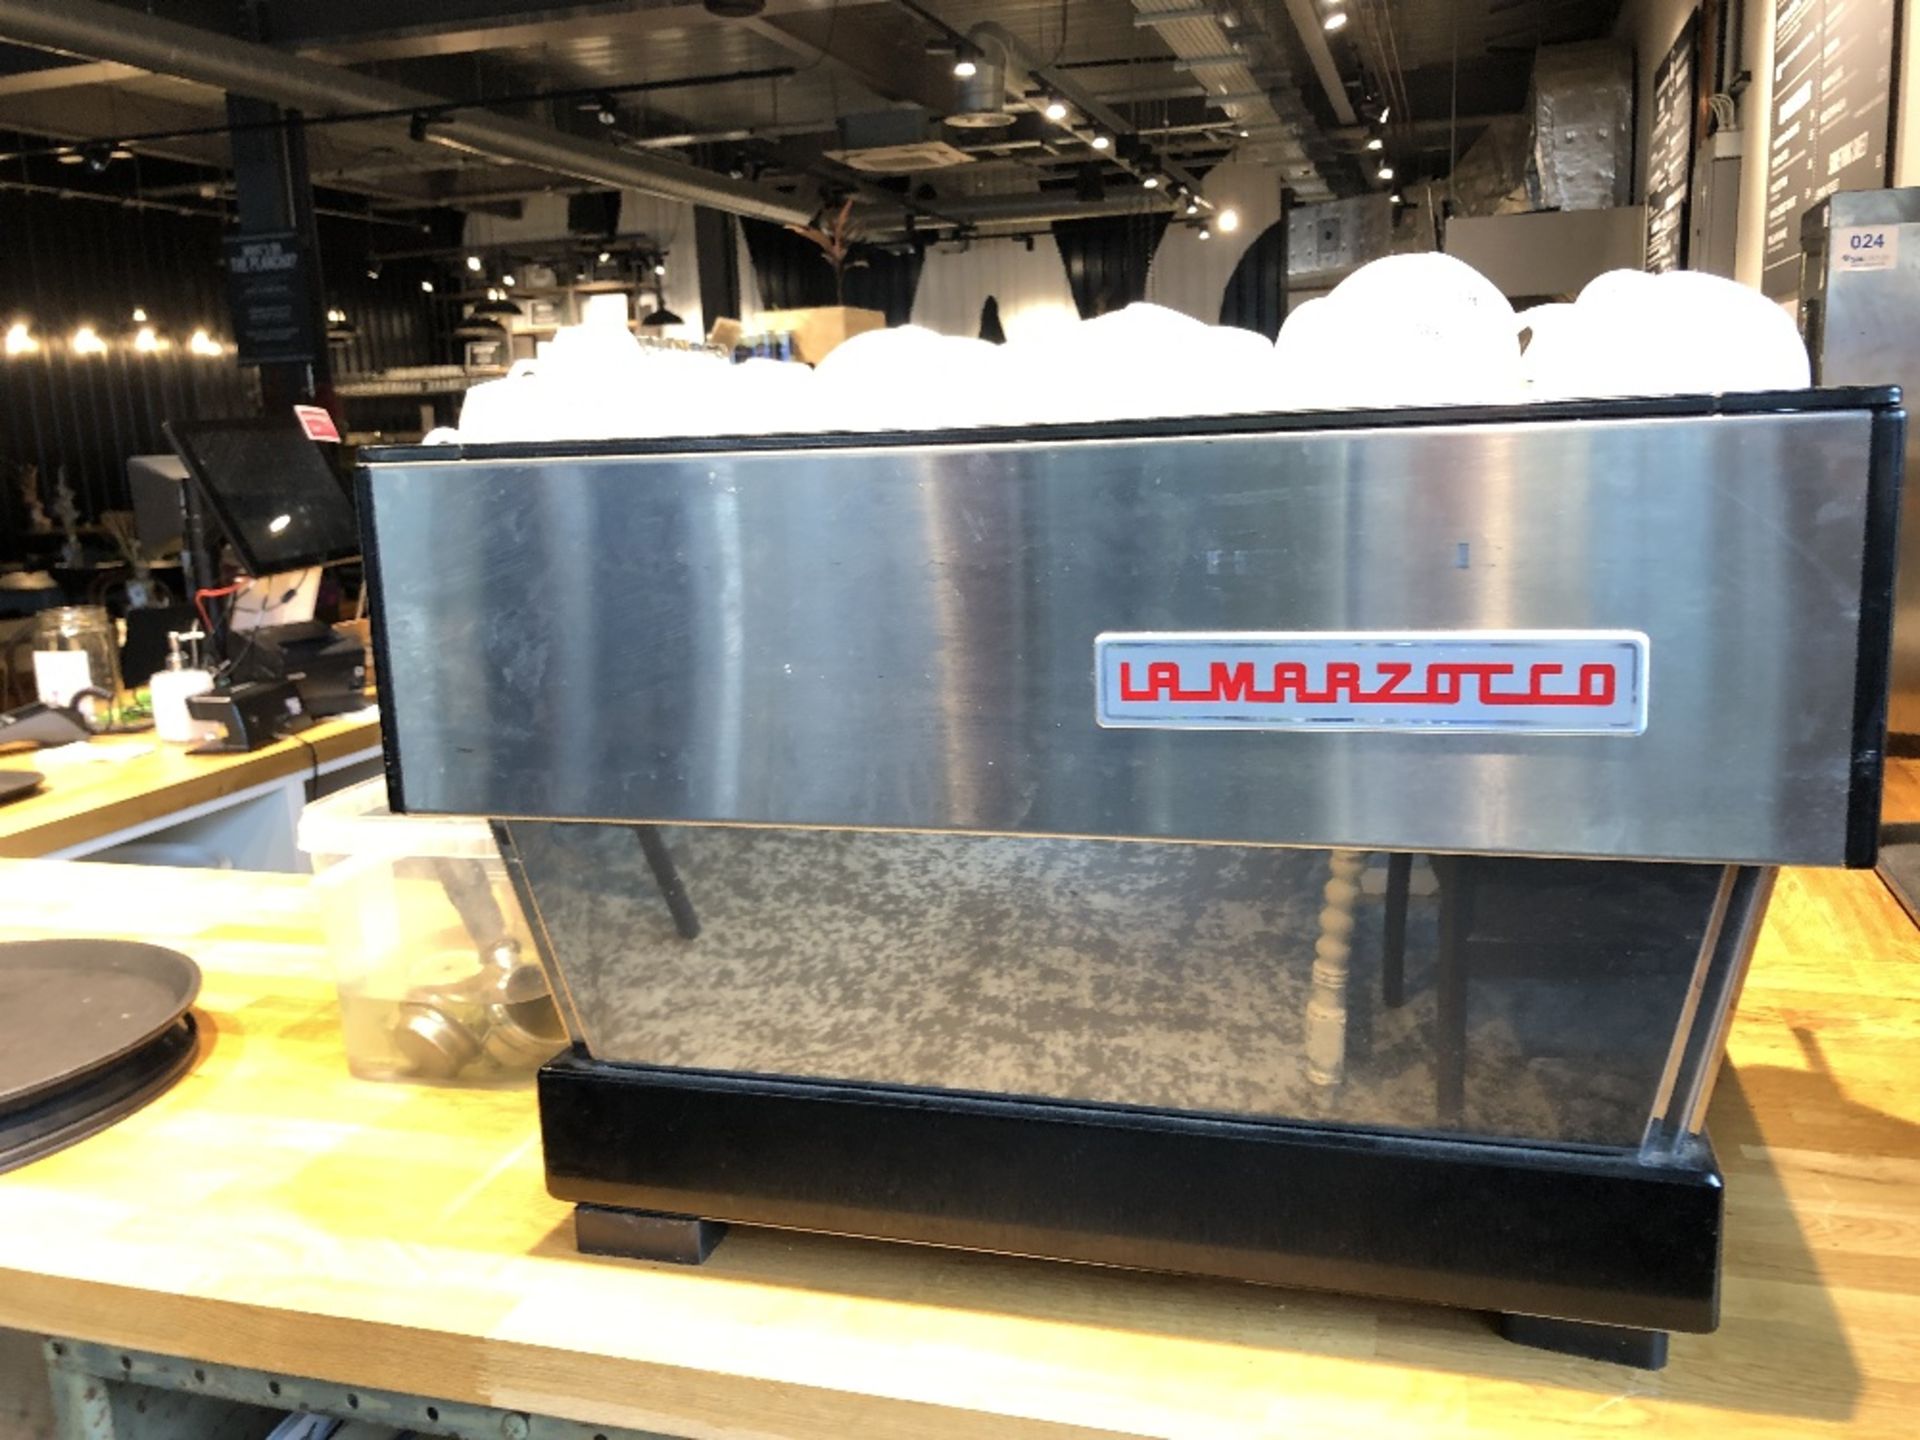 La Marzocco Linea Classic S (2 Group) AV Espresso Coffee Machine - Image 7 of 10